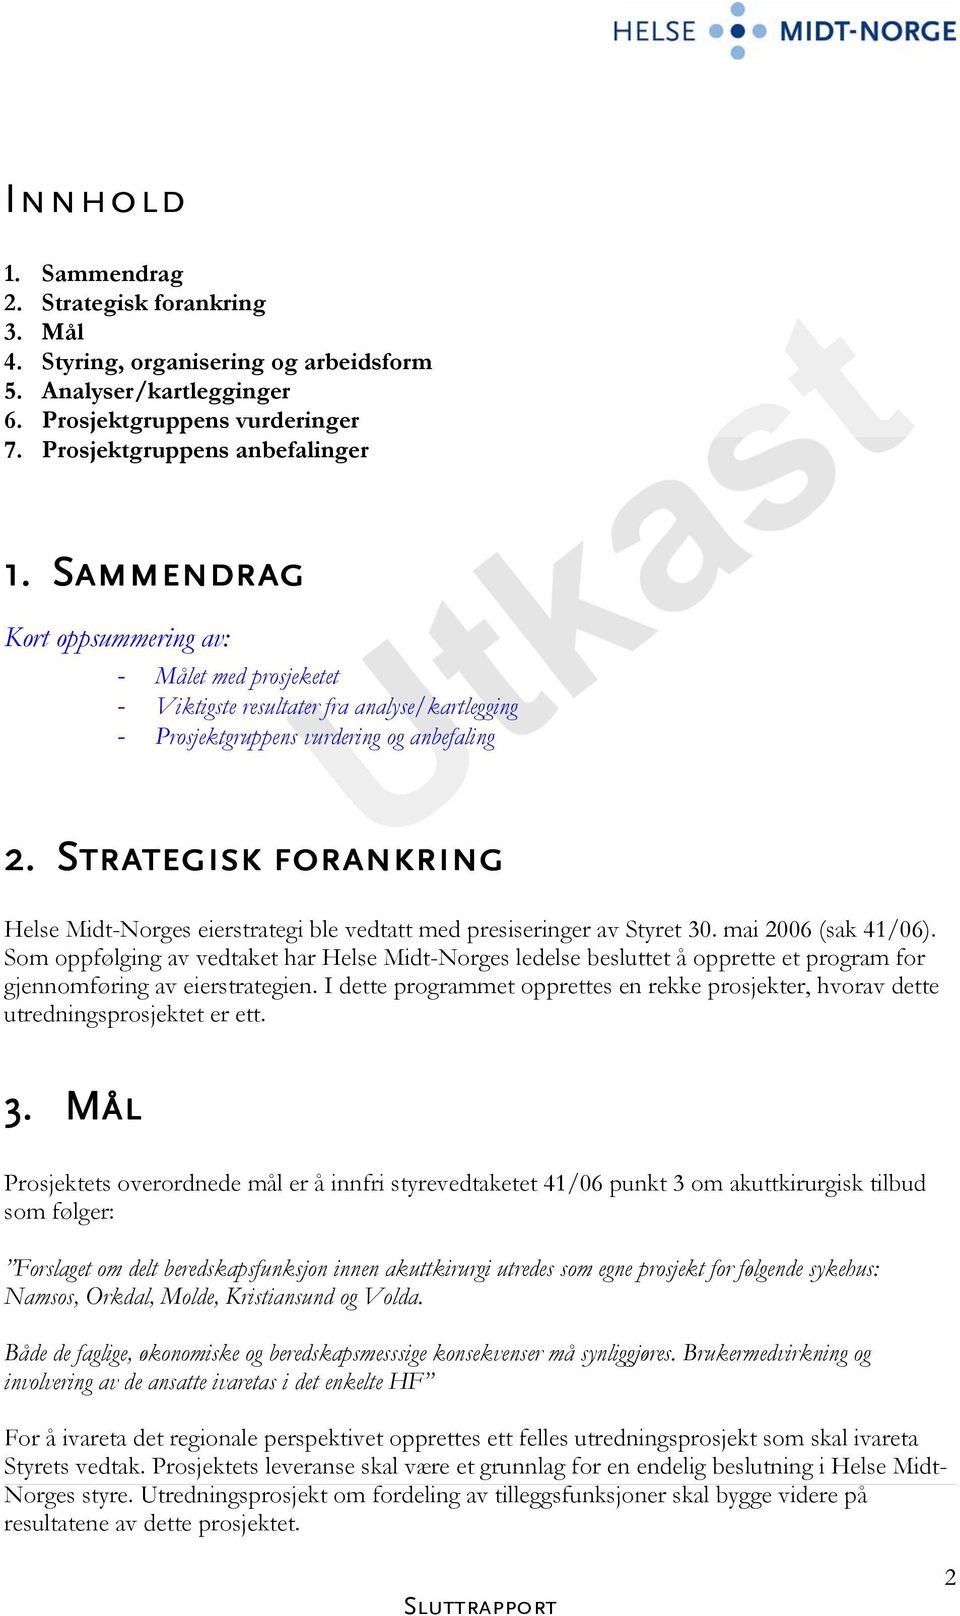 Strategisk forankring Helse Midt-Norges eierstrategi ble vedtatt med presiseringer av Styret 30. mai 2006 (sak 41/06).